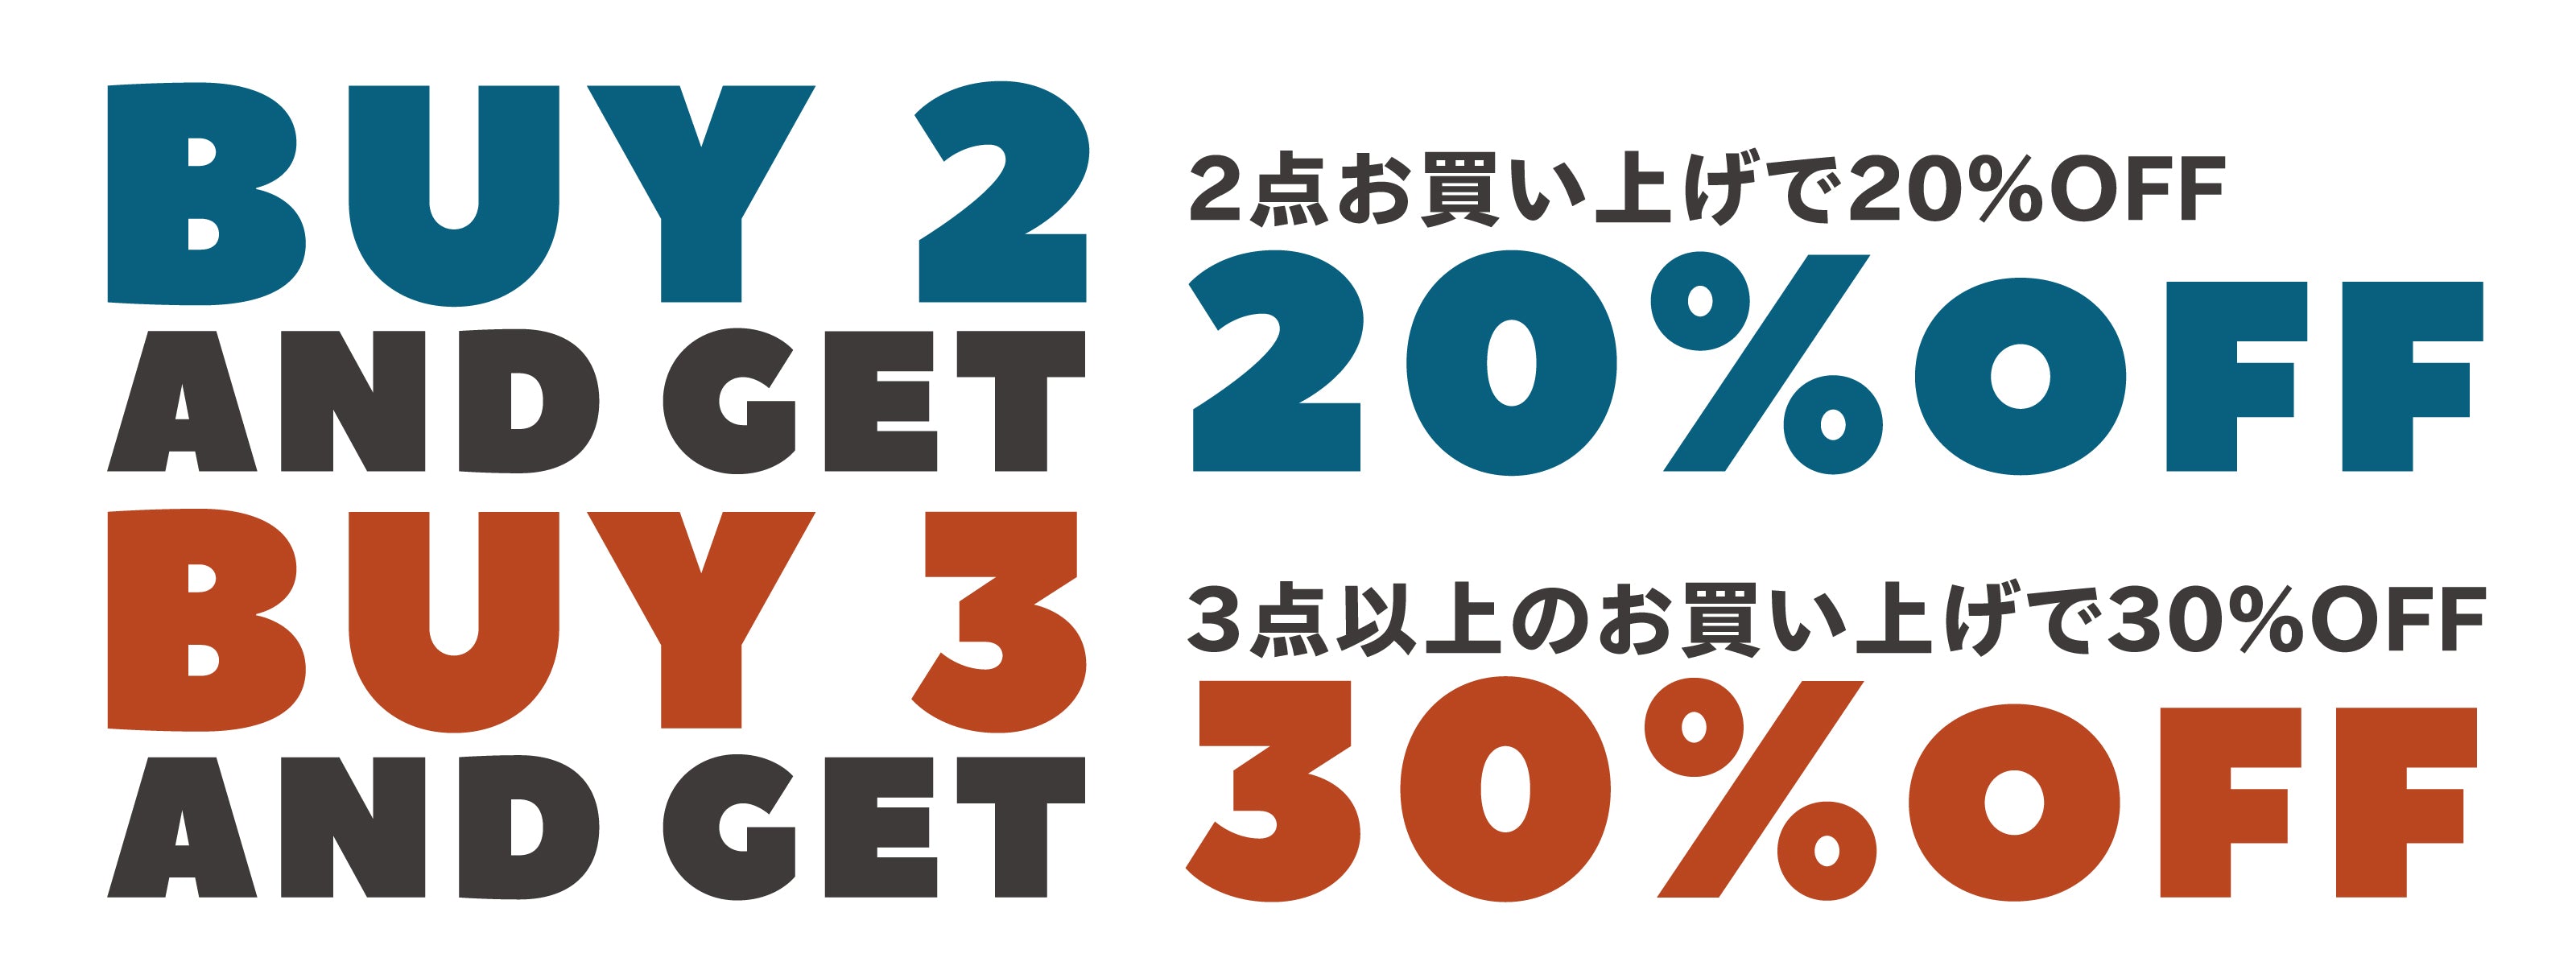 BUY 2 & GET 20%OFF / BUY 3 & GET 30%OFF』キャンペーン開催のお知らせ